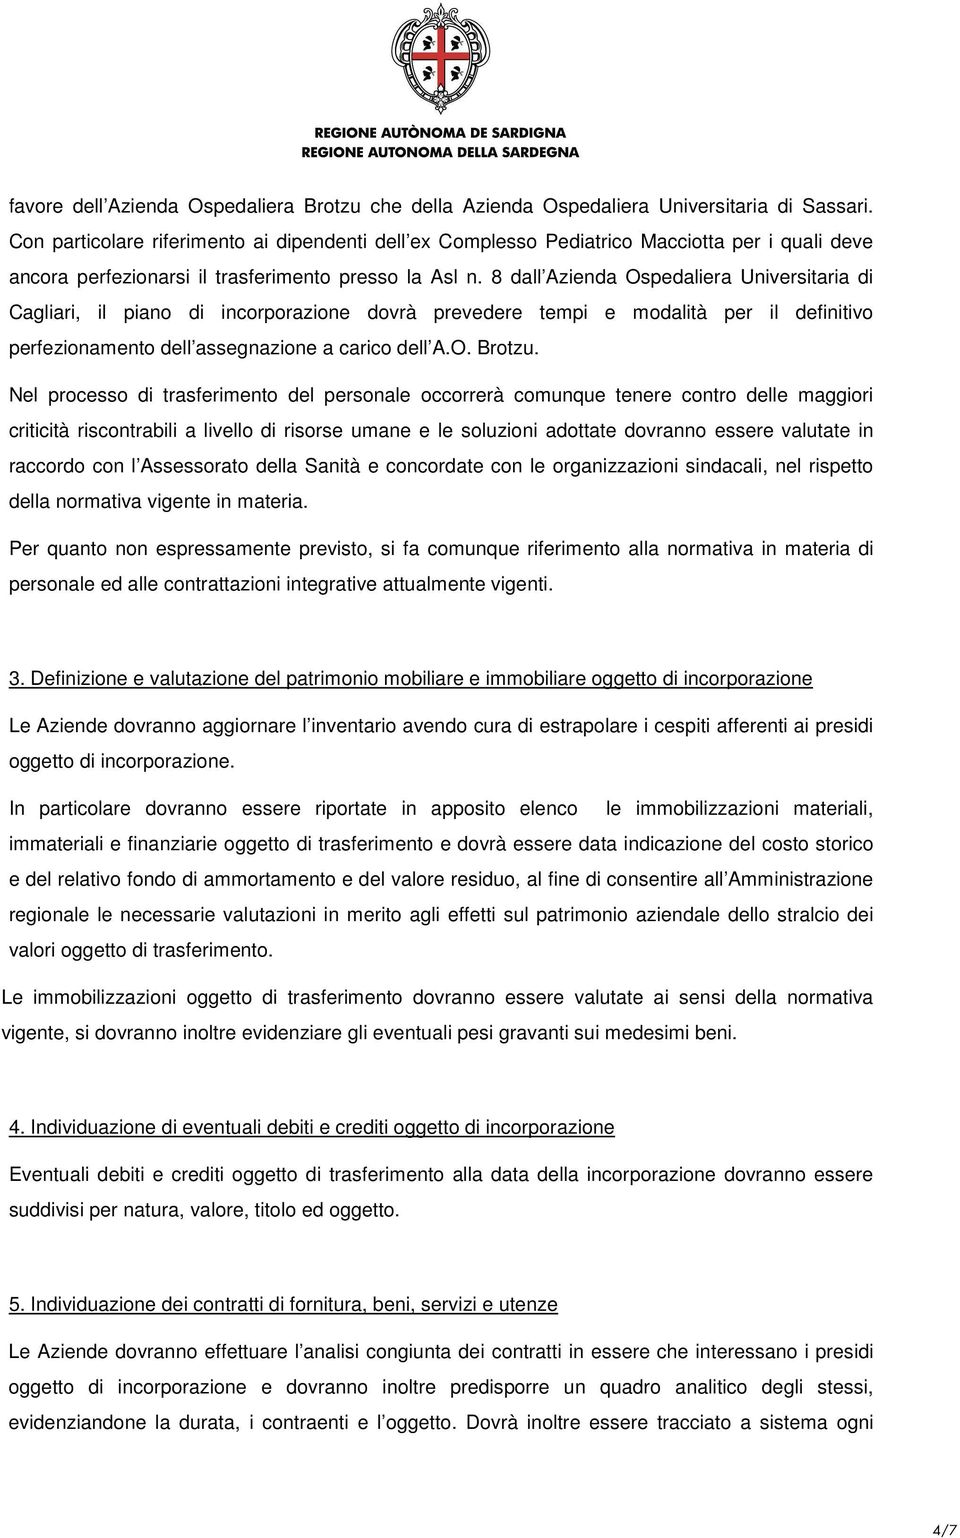 8 dall Azienda Ospedaliera Universitaria di Cagliari, il piano di incorporazione dovrà prevedere tempi e modalità per il definitivo perfezionamento dell assegnazione a carico dell A.O. Brotzu.